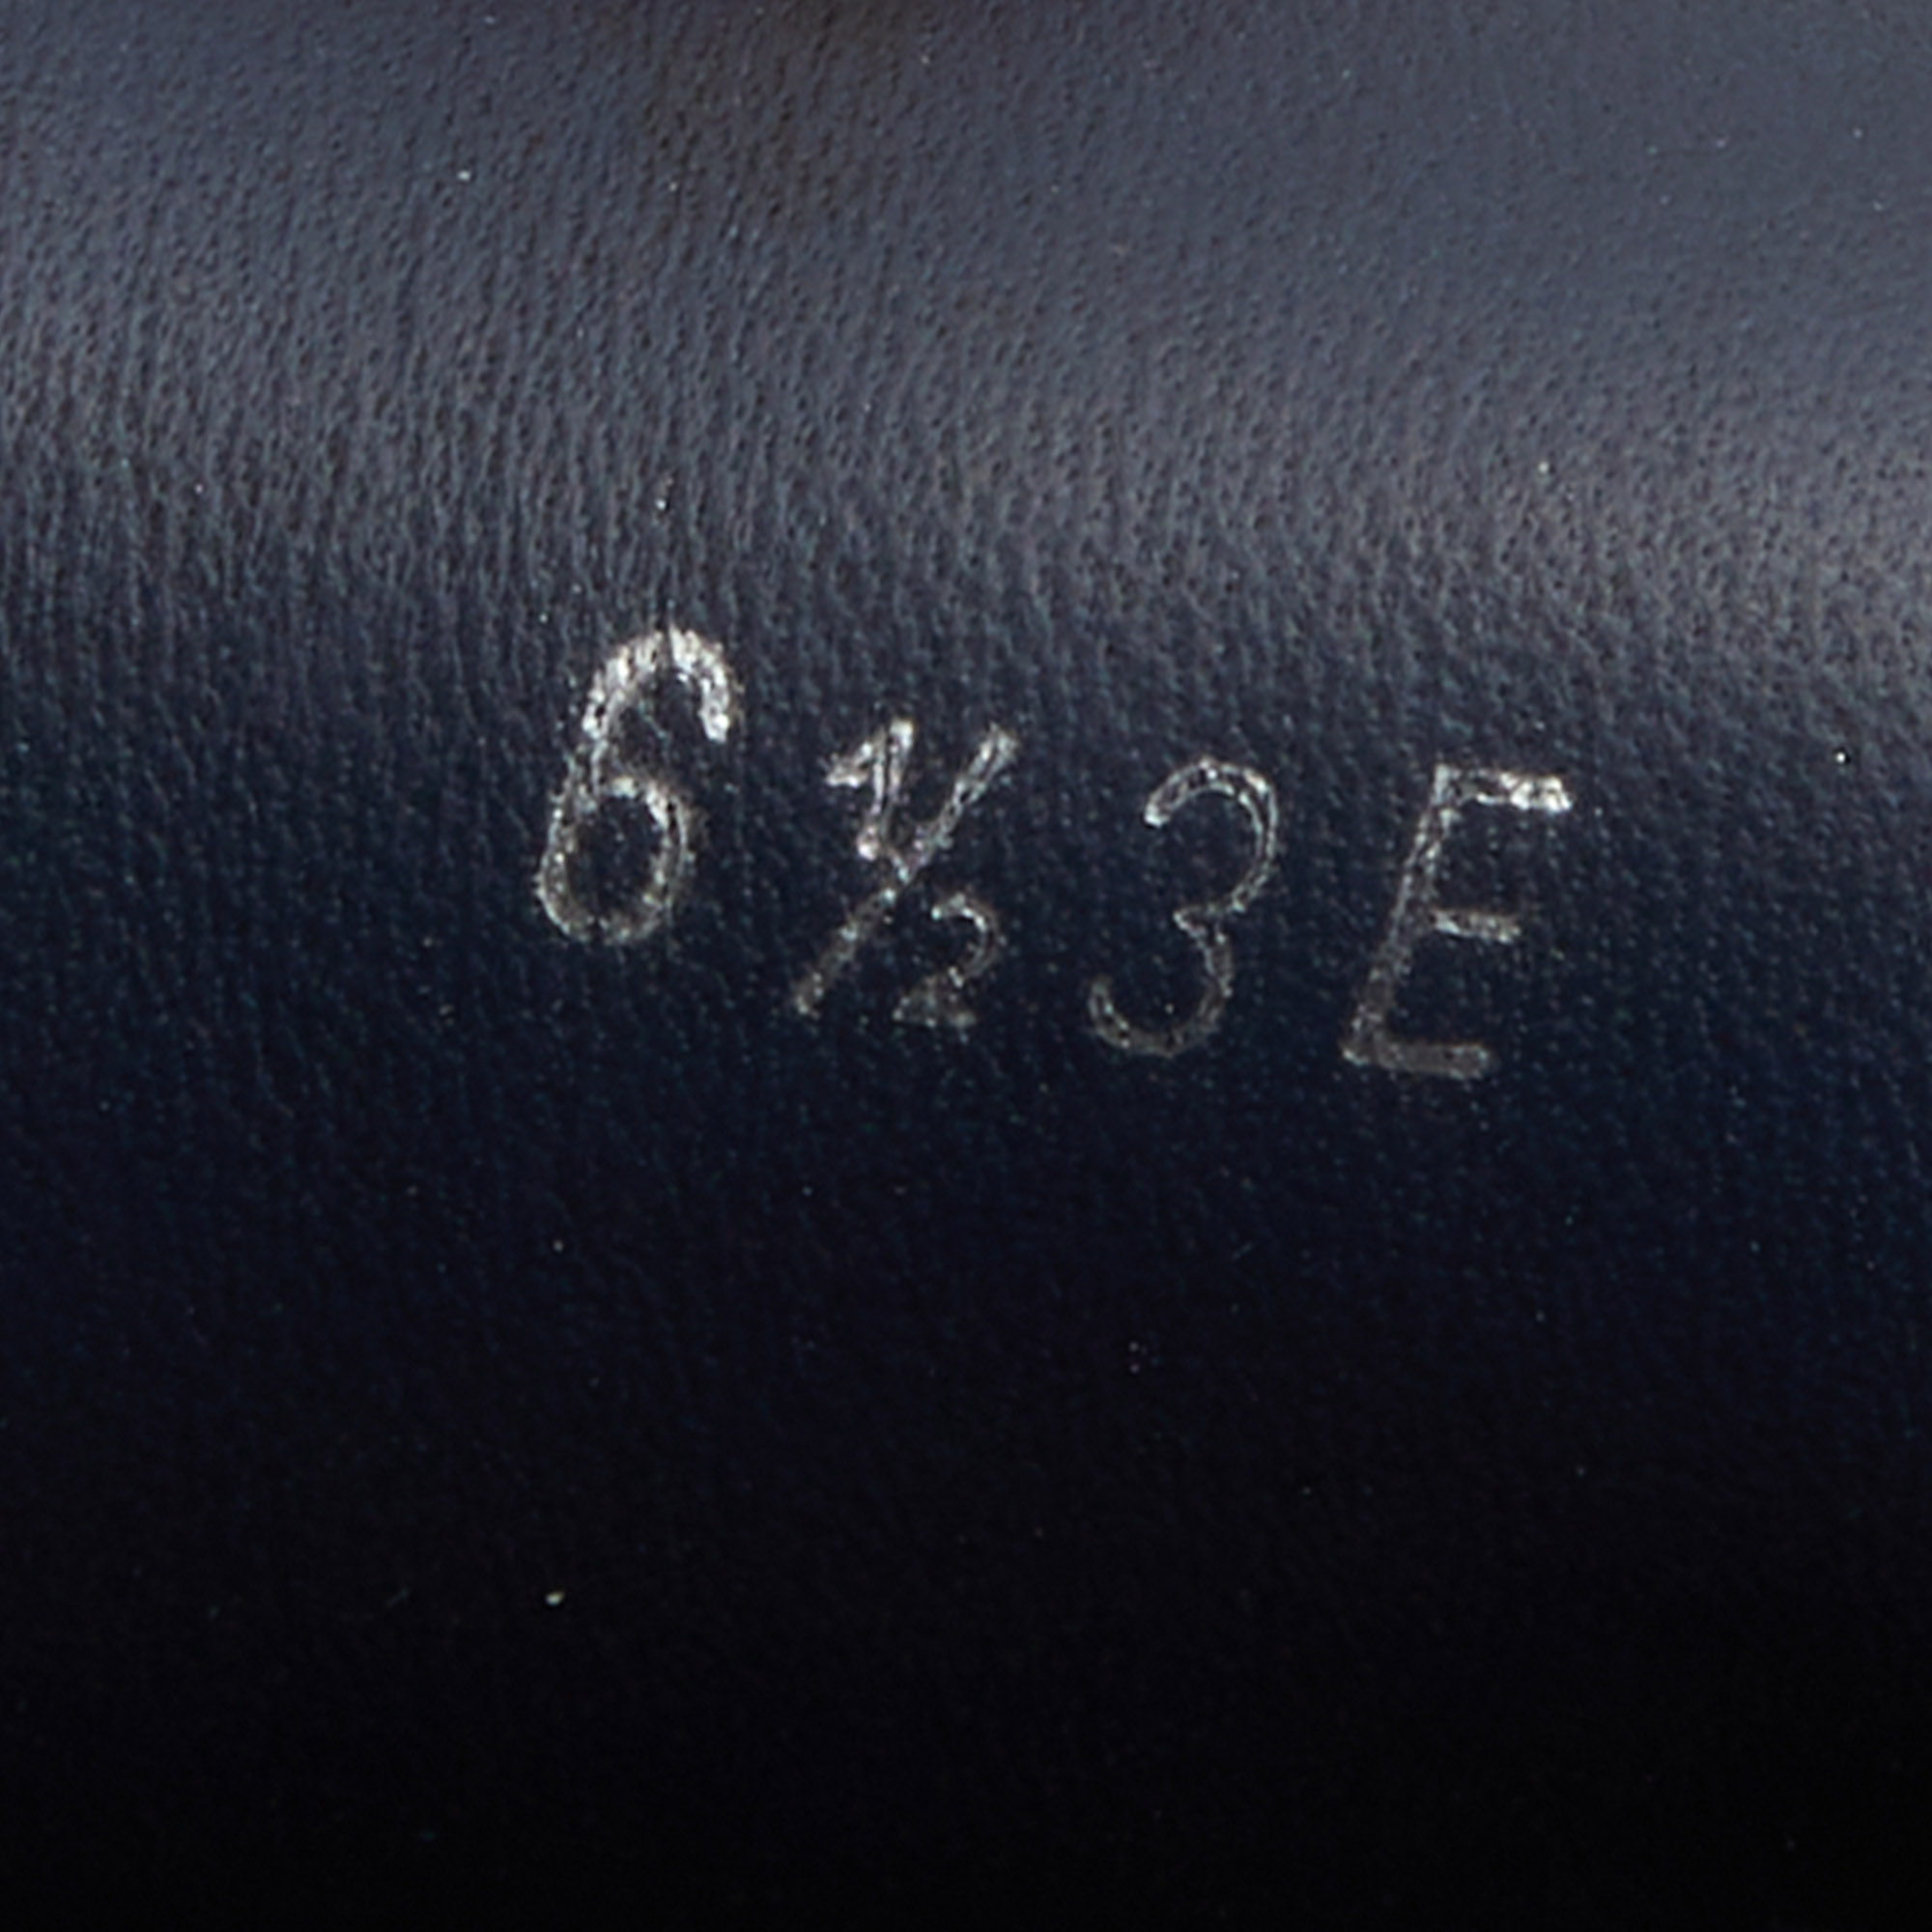 Salvatore Ferragamo Brown Leather Loafers Size 40.5